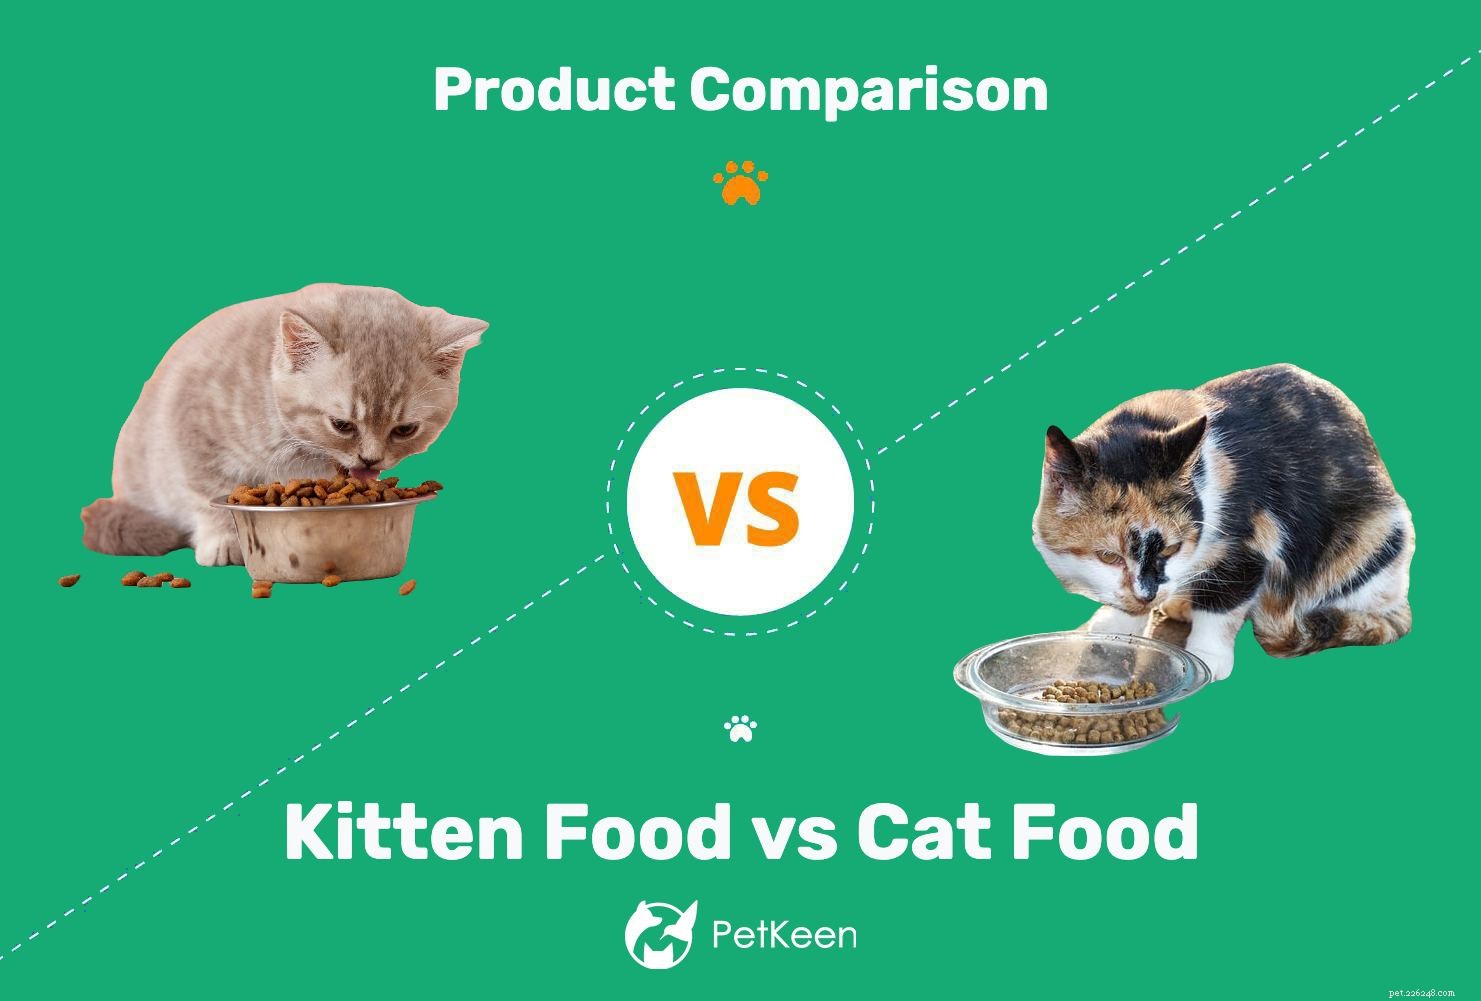 Cibo per gatti e cibo per gatti:c è differenza? (Pro e contro)